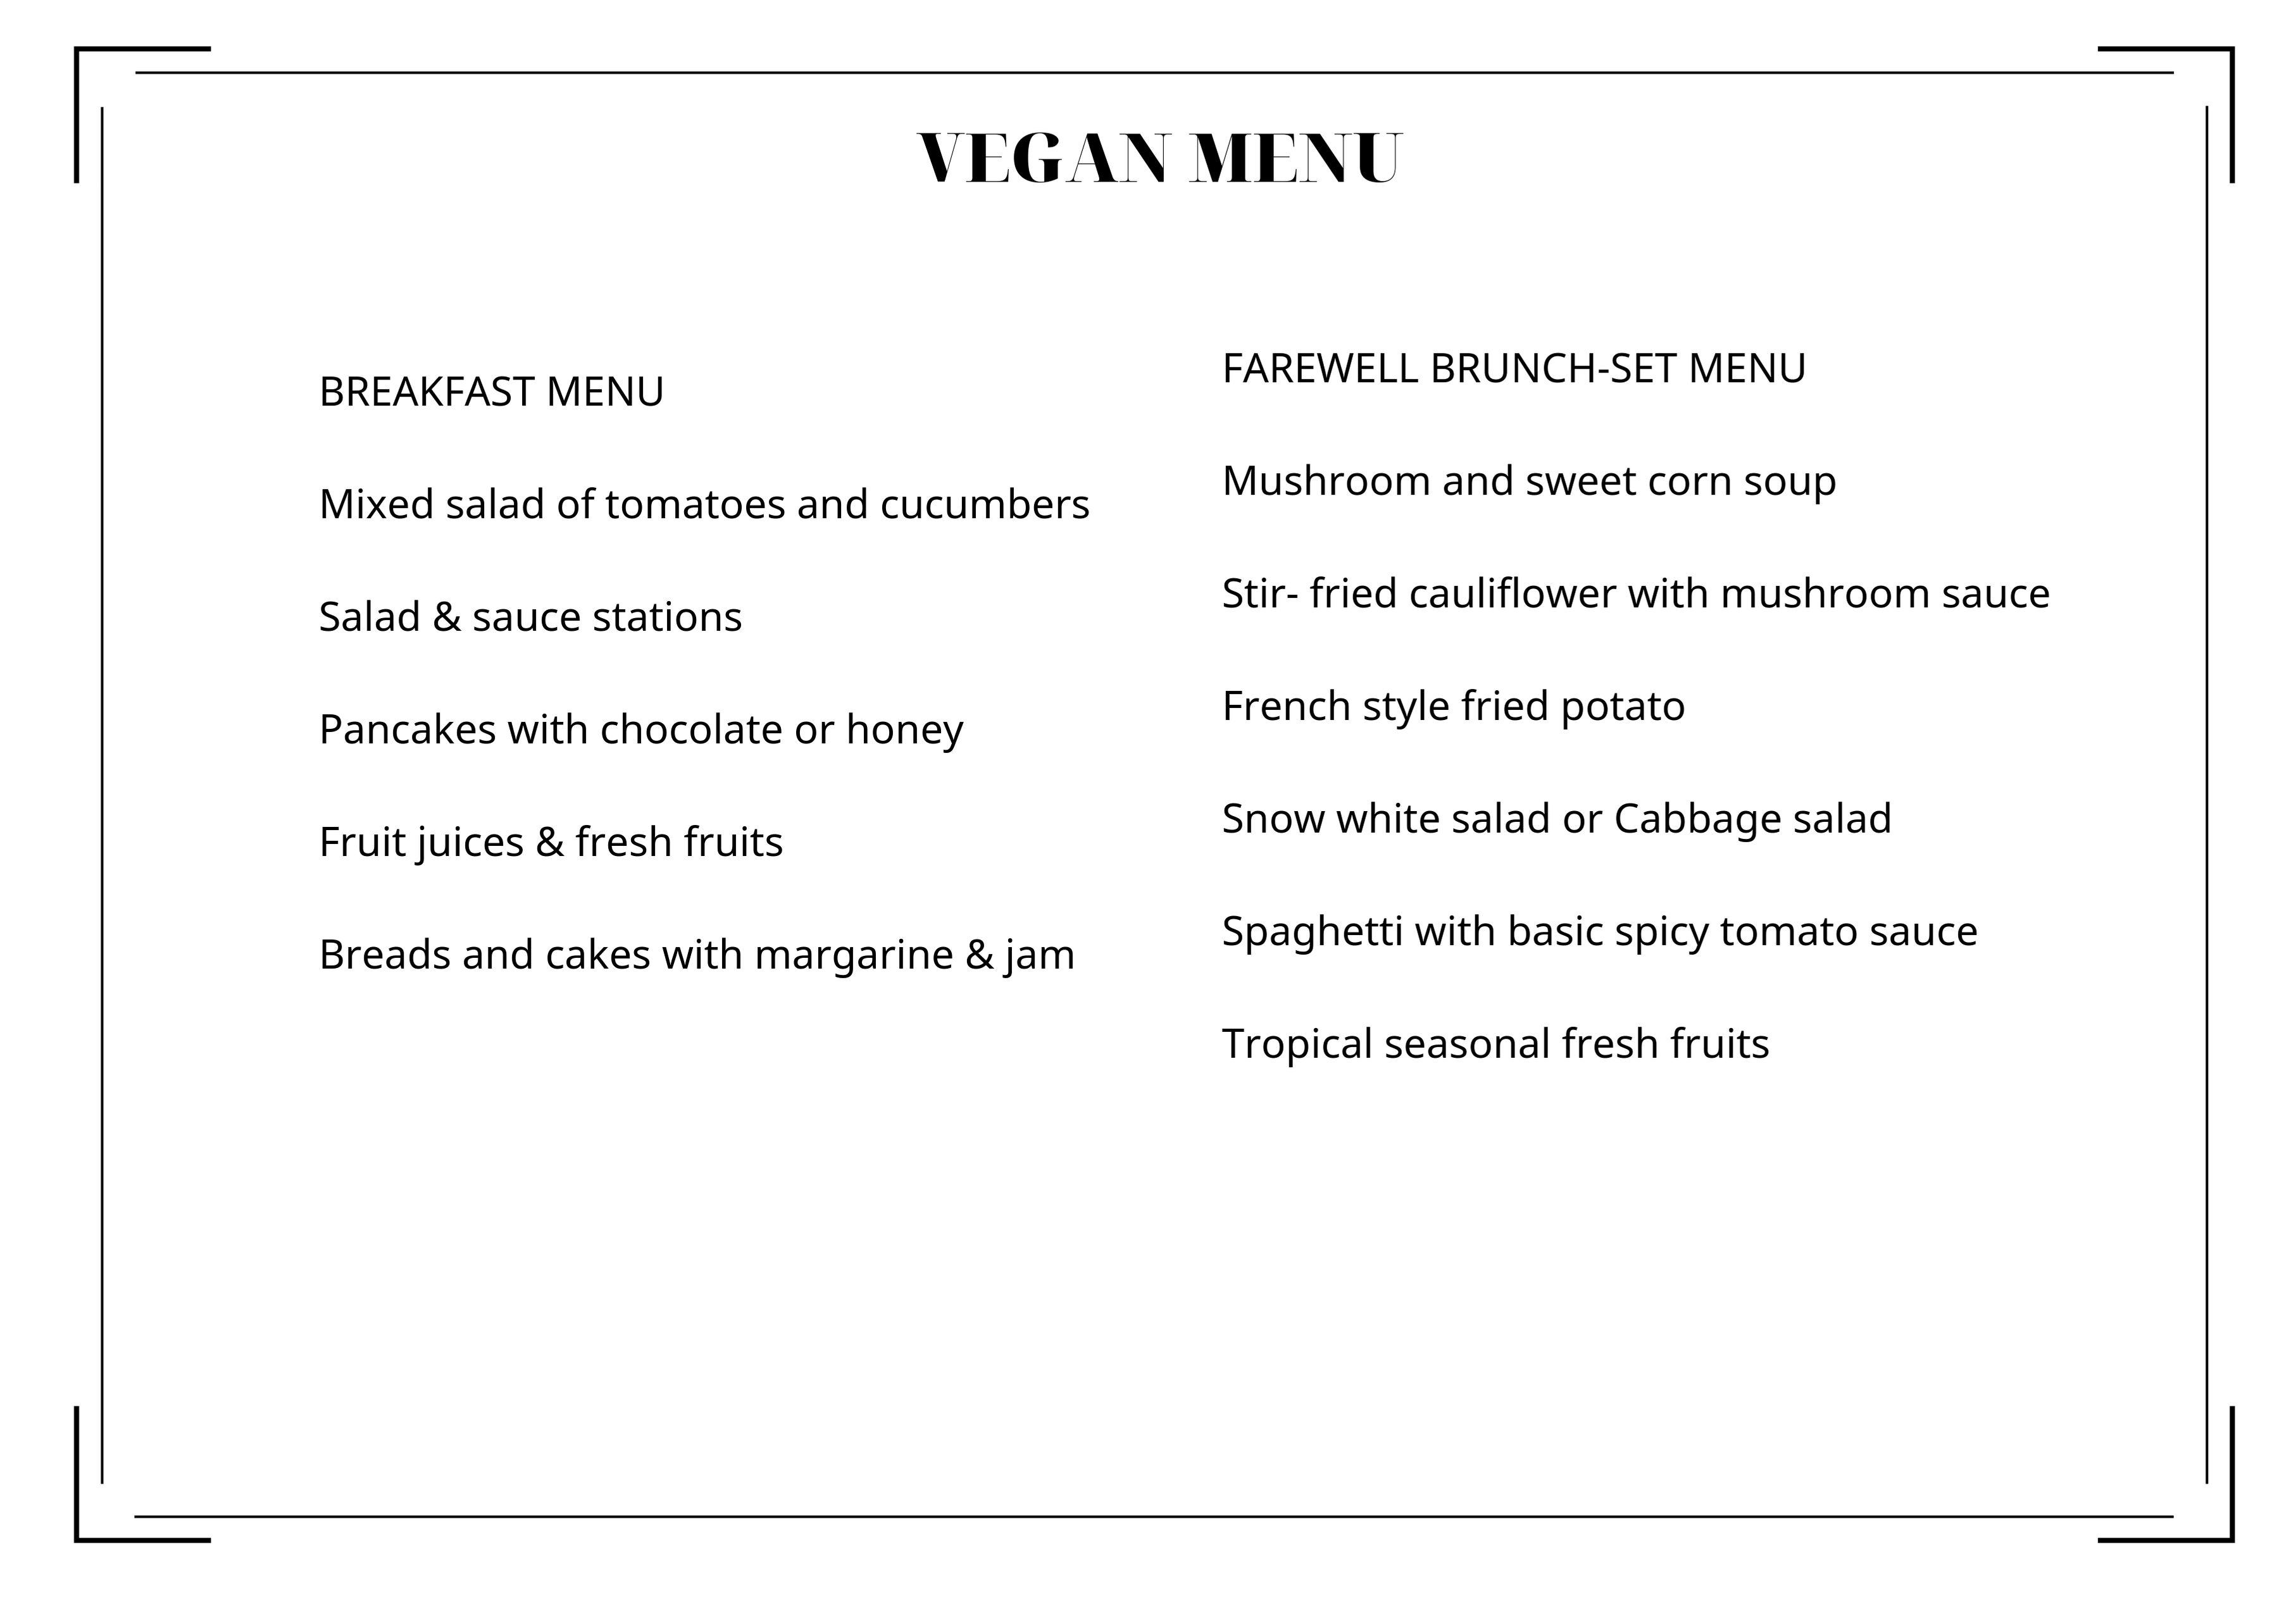 Vegan cruises menu